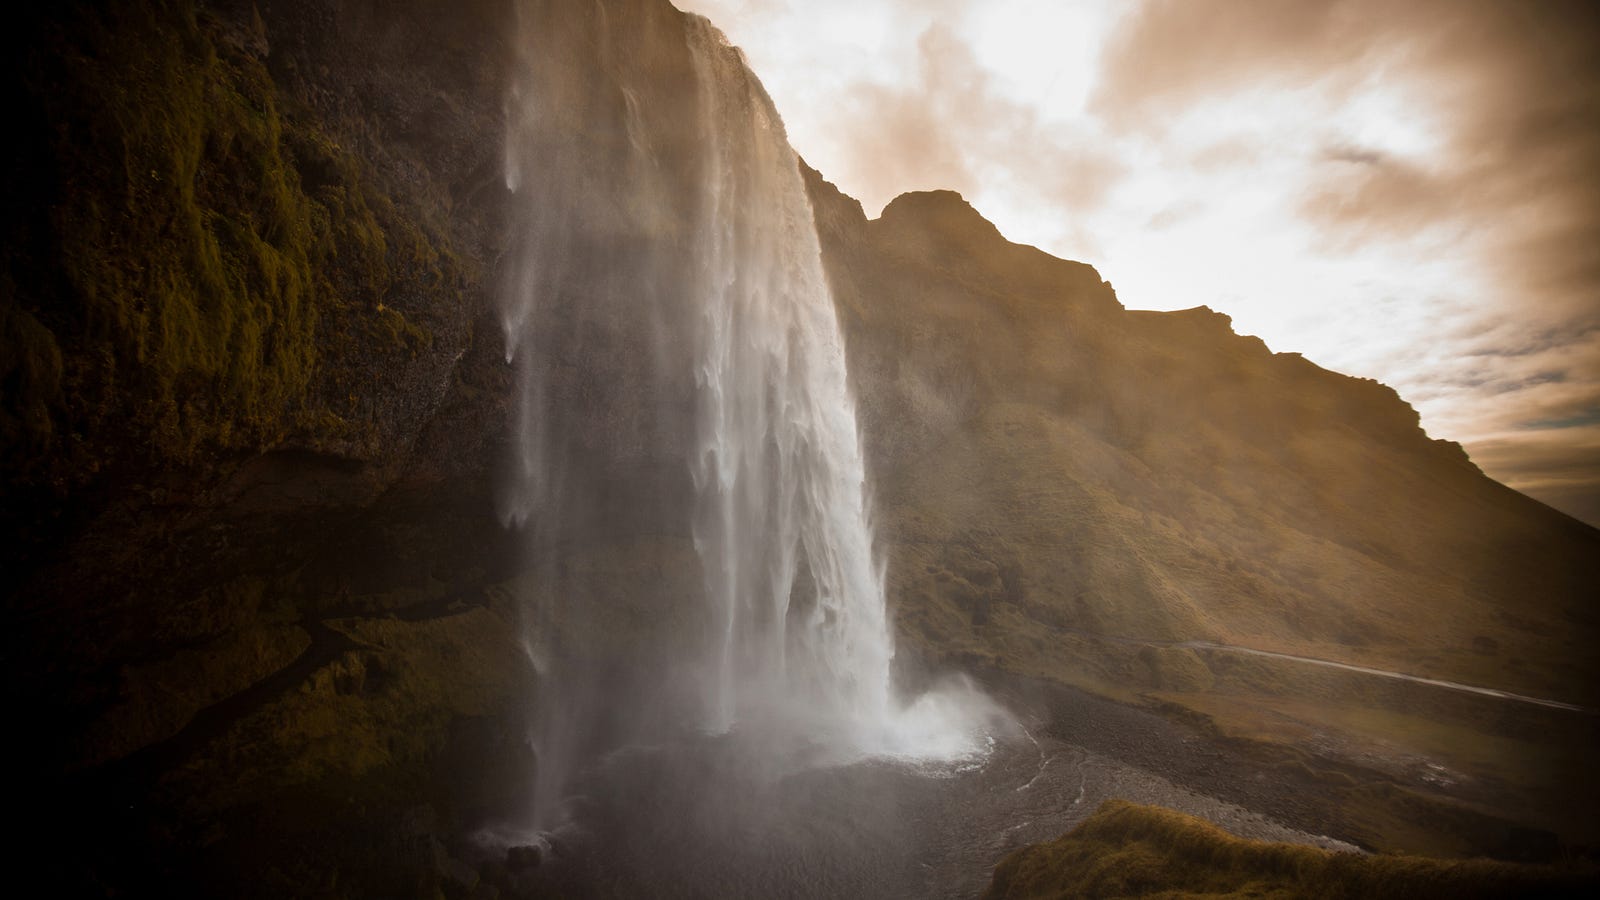 Seljalandsfoss Waterfall, Iceland